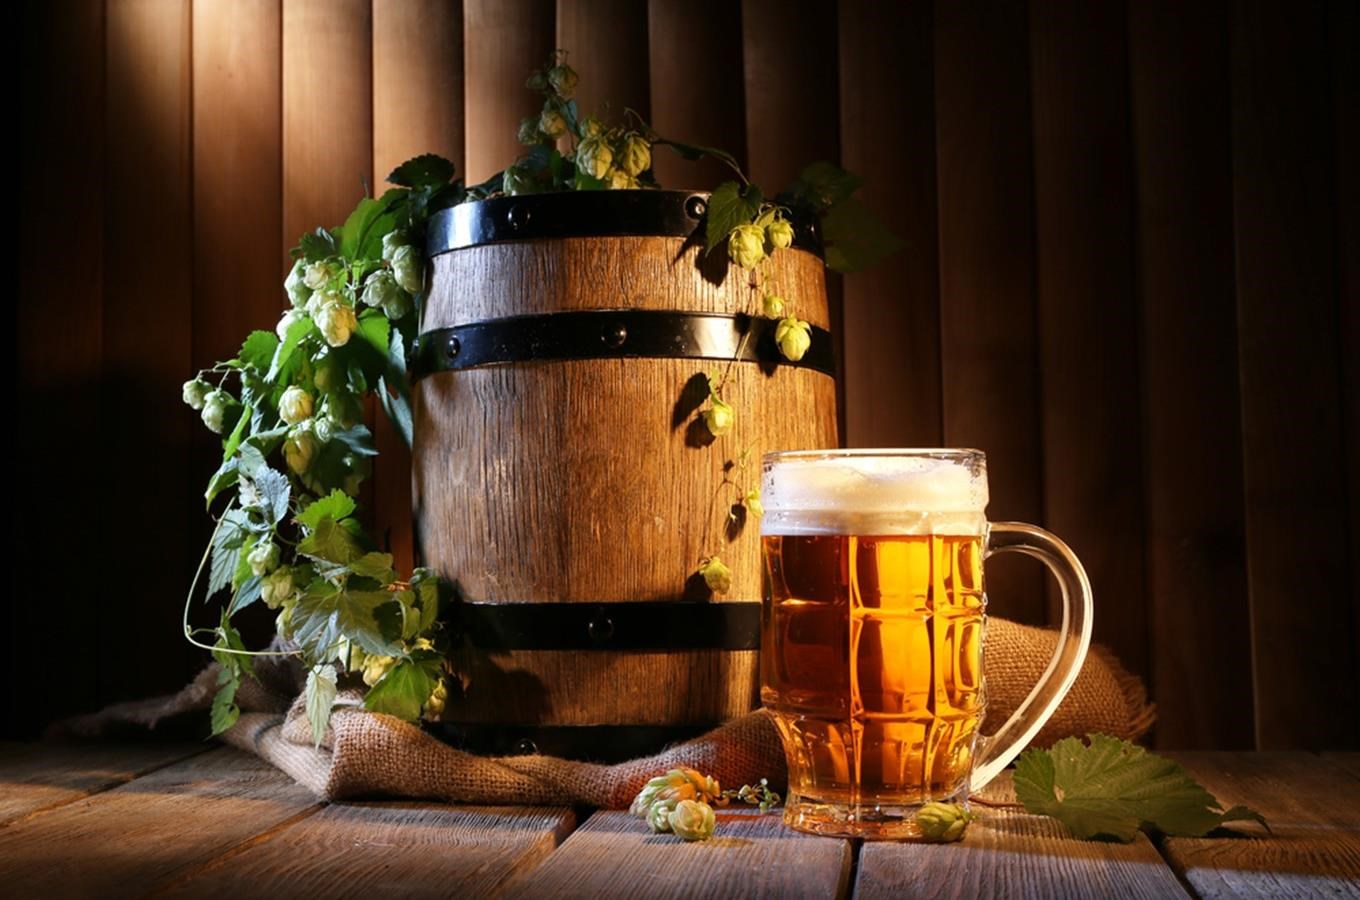 Tradice: slavné osobnosti kolem piva aneb pivo dělá sládek